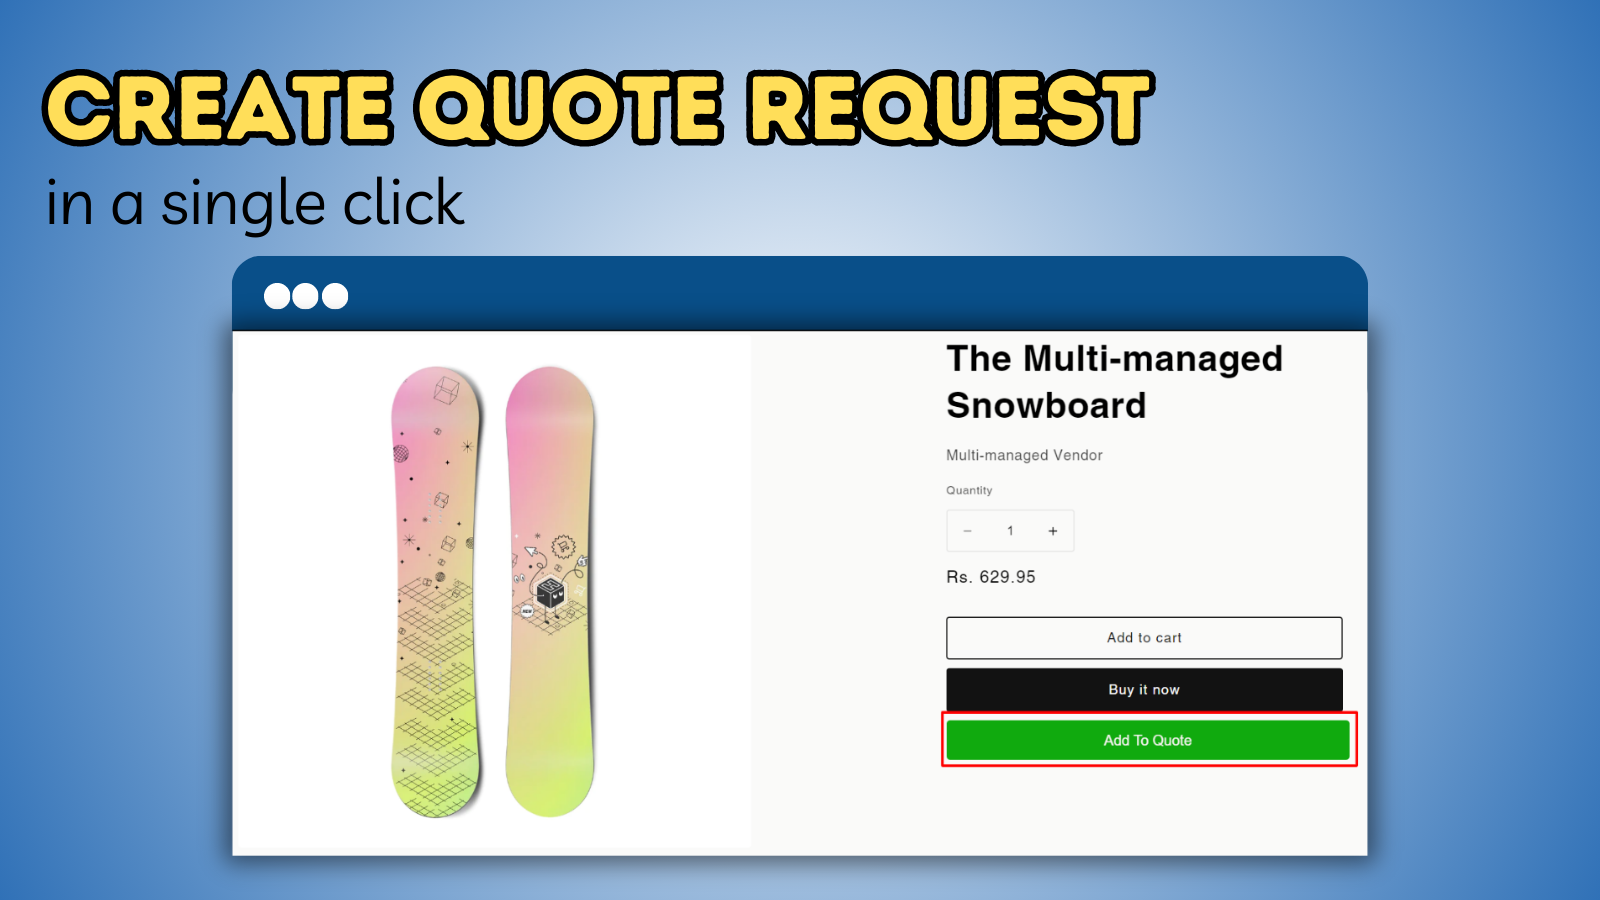 Create quote request in a single click